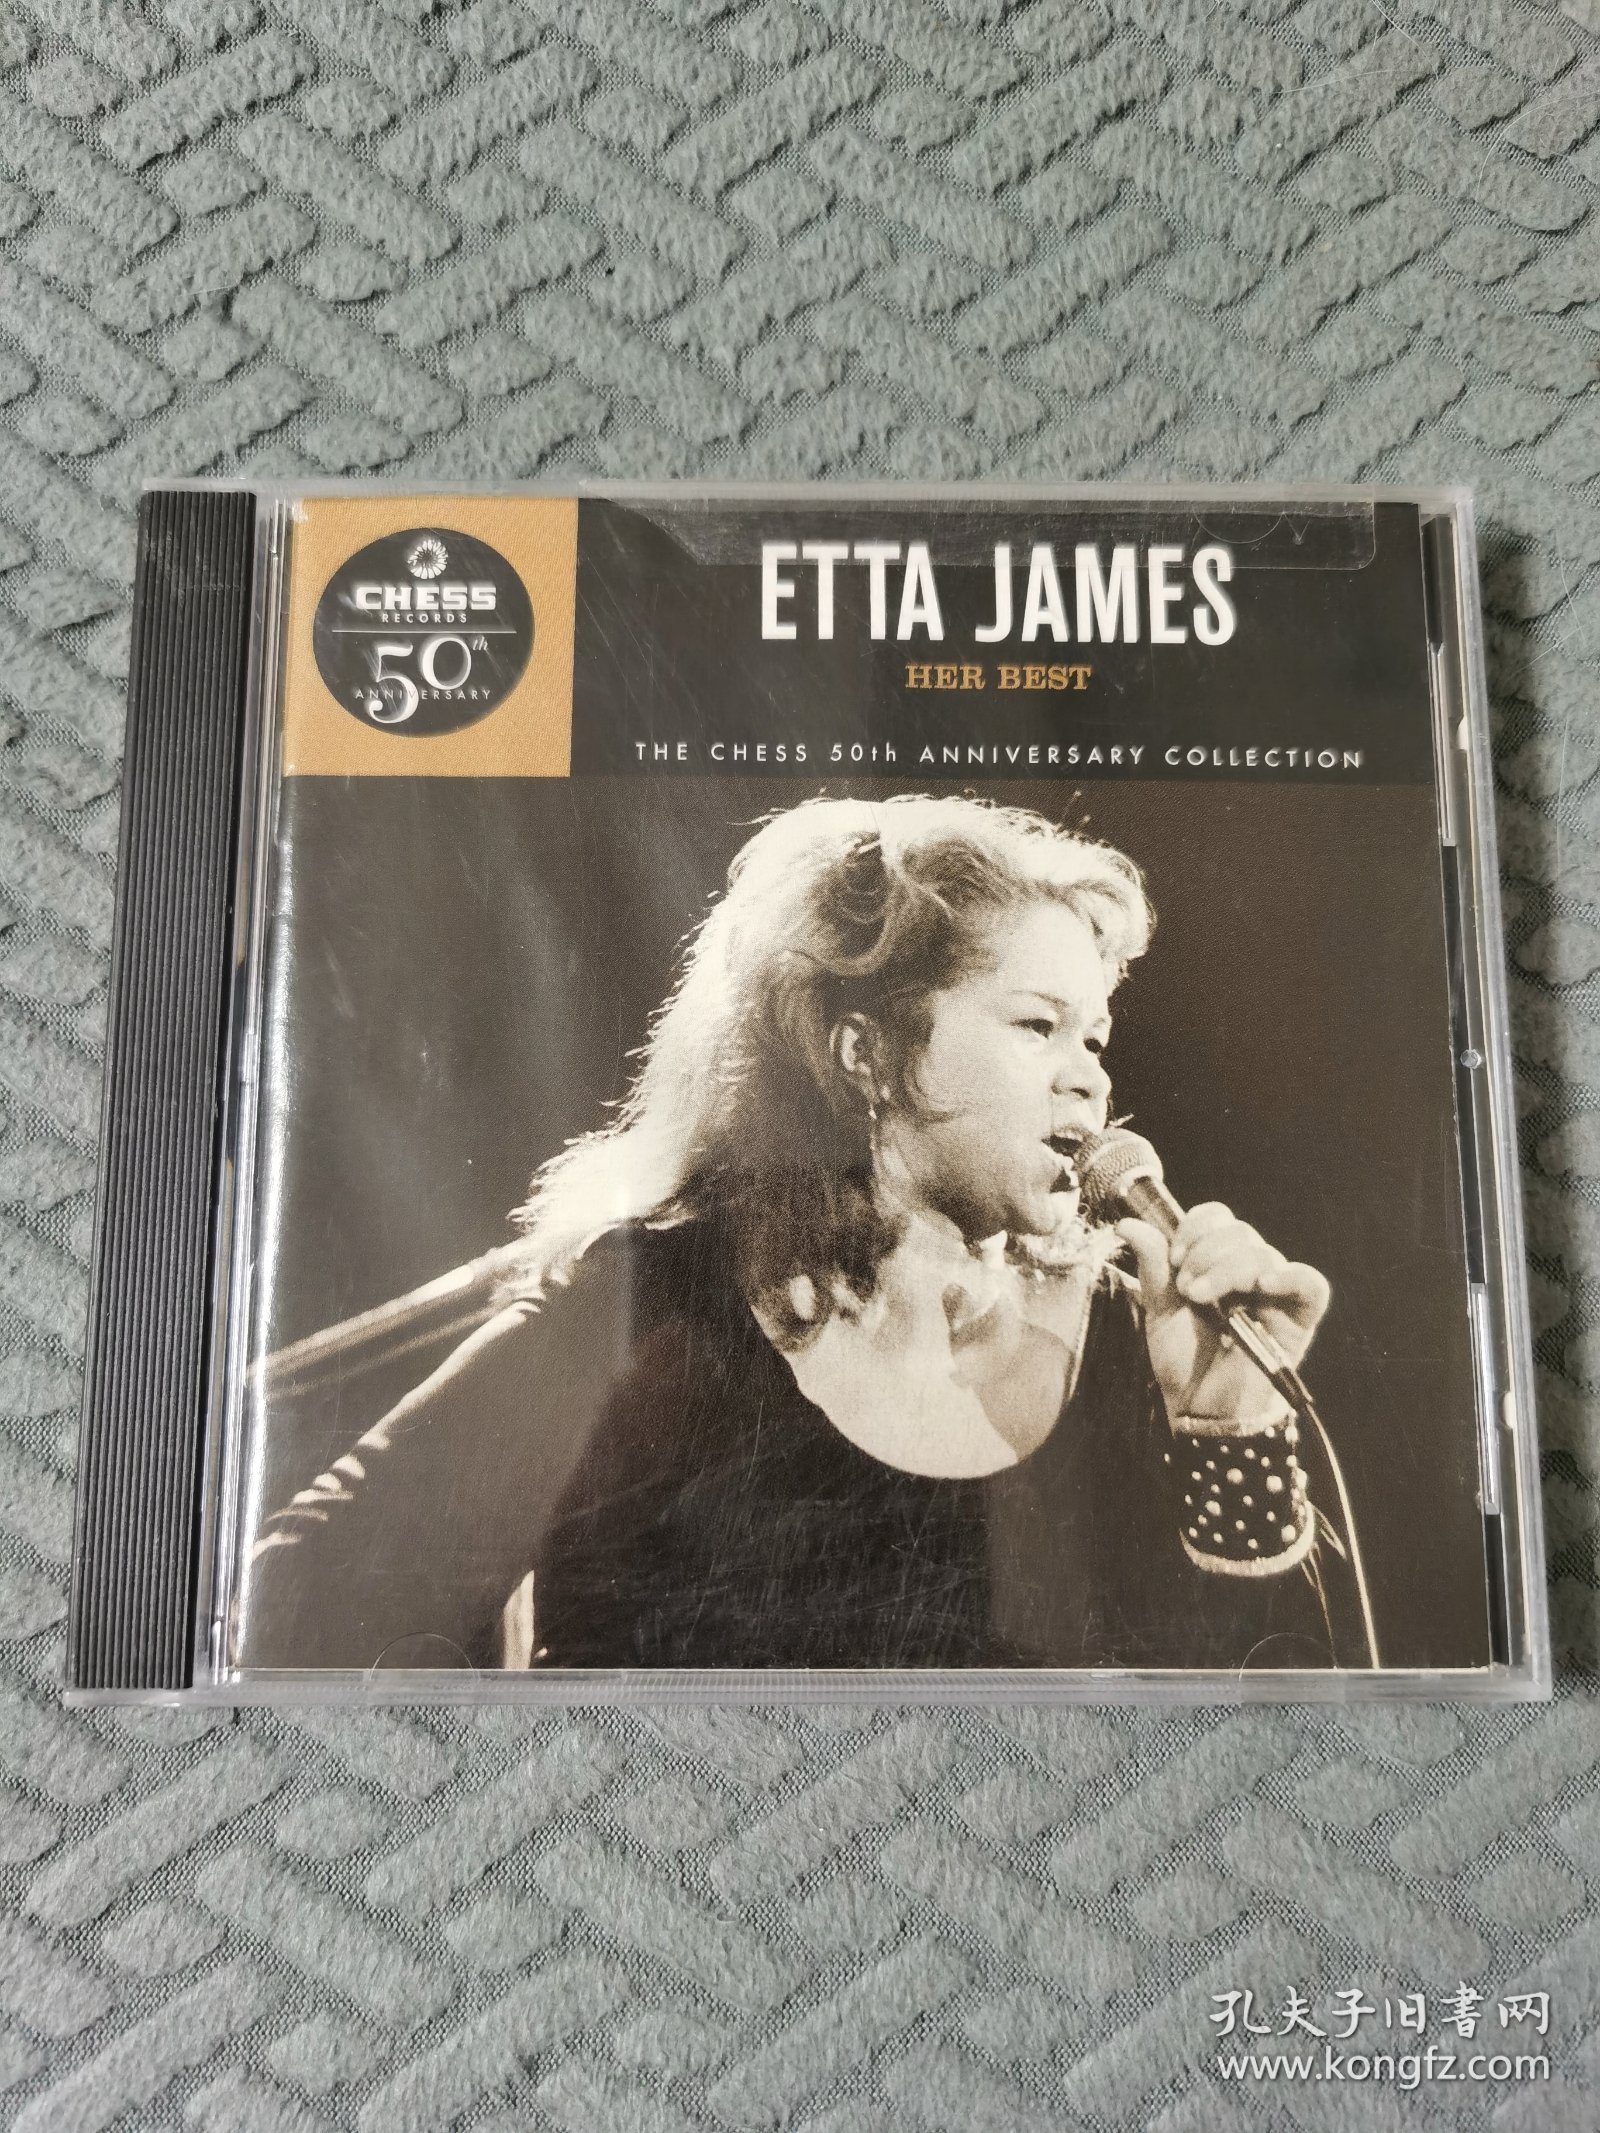 原版老CD etta james - best 布鲁斯女伶 chess名盘系列 收藏佳品